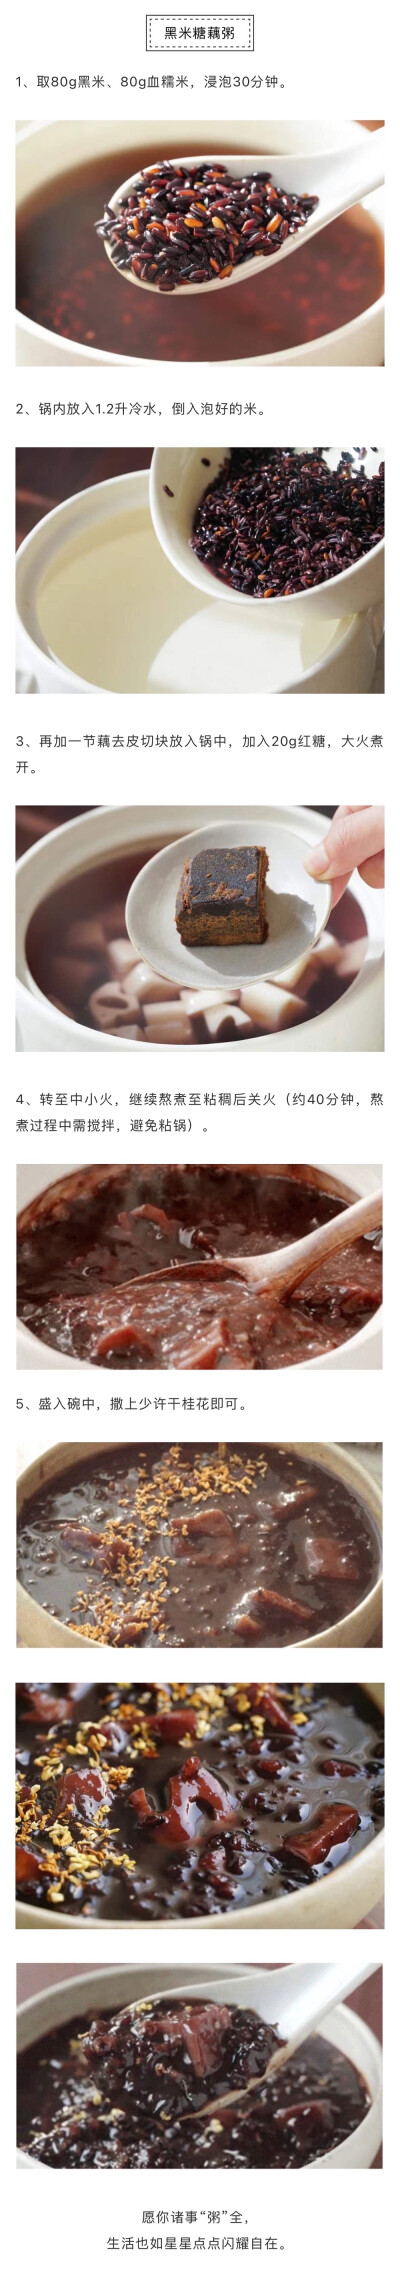 日食记-黑米糖藕粥